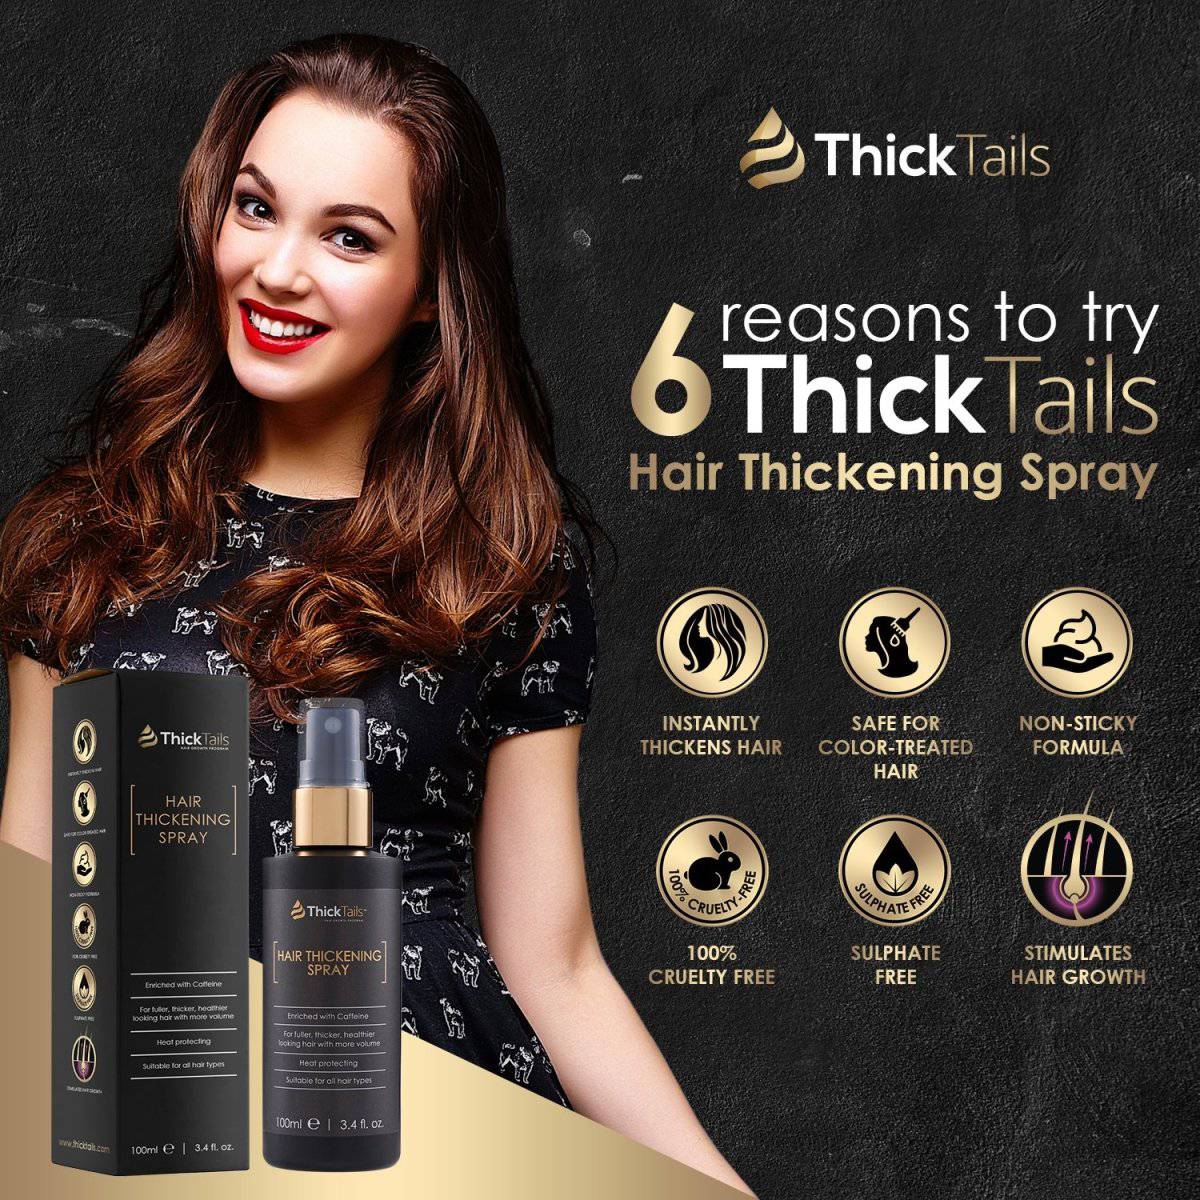 ThickTails Instant Hair Thickening Spray | 3.4FL.OZ